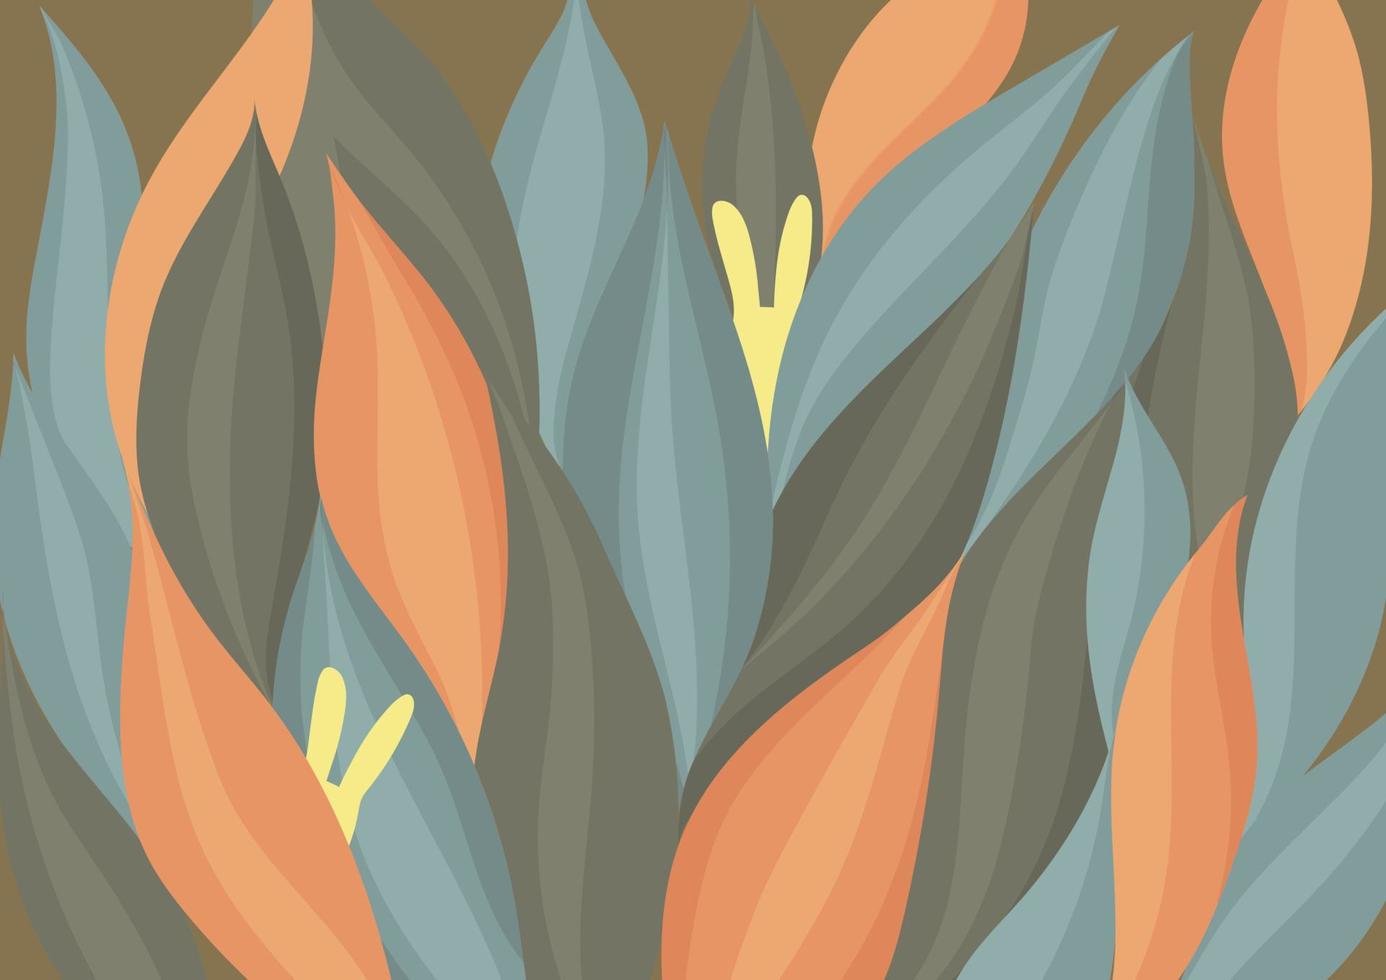 ilustración vectorial de un conejito amarillo escondido en una elegante hierba marrón, naranja y gris sobre un cálido fondo oscuro. se puede usar para pancartas, carteles y tarjetas de felicitación relacionadas con el otoño, el calor y la Pascua. vector